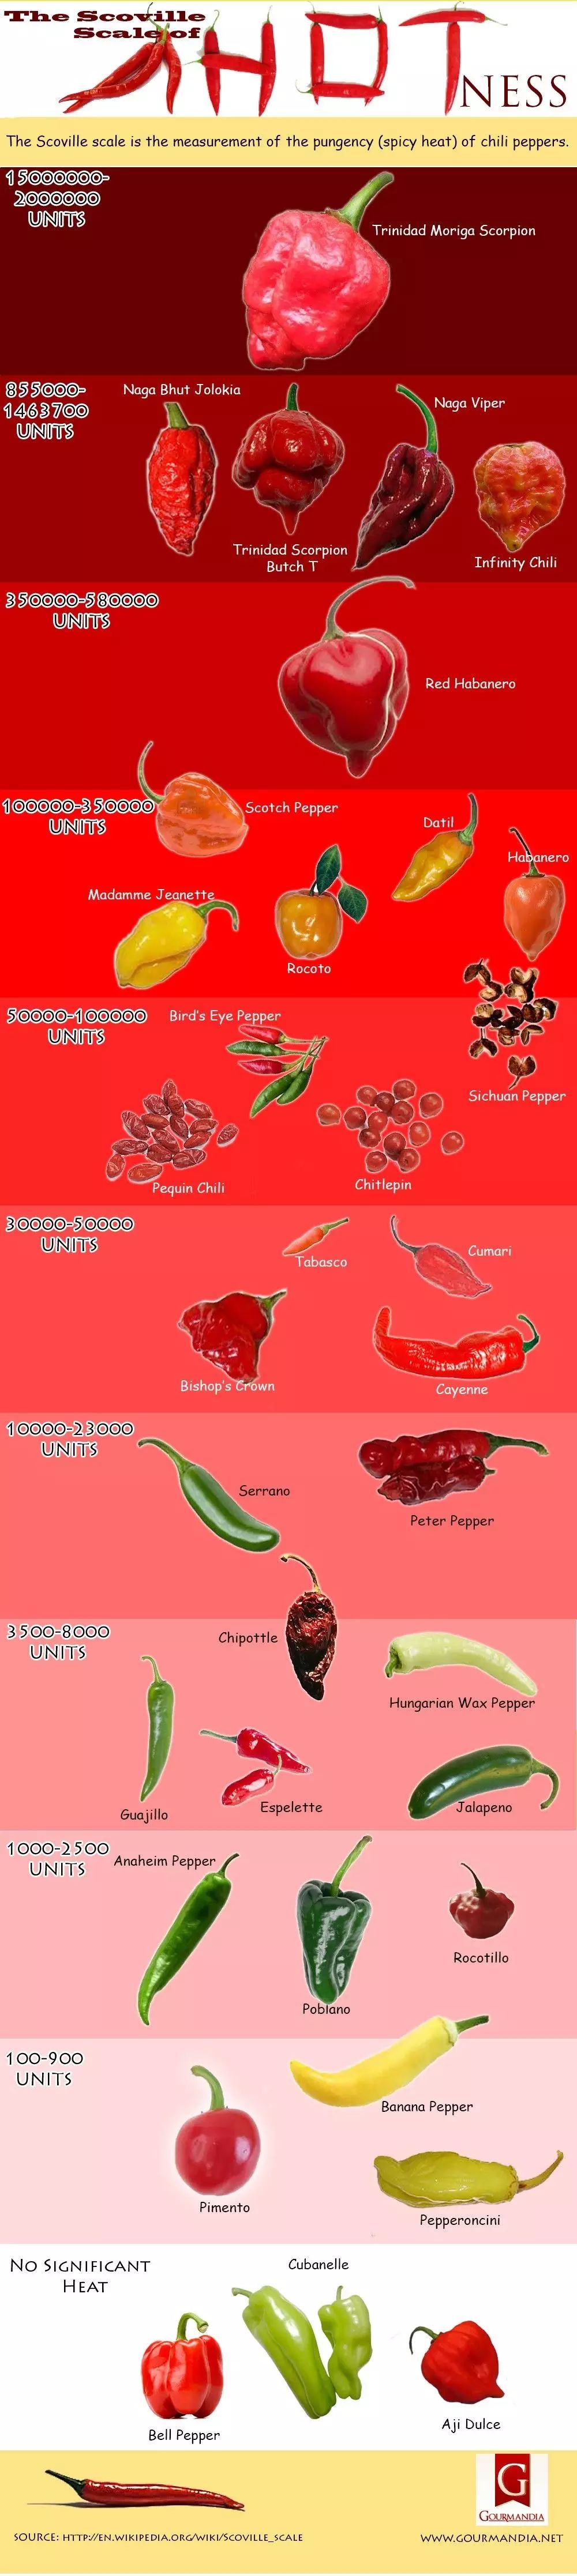 花椒(sichuan pepper),其辣度比卡宴辣椒高,这证明